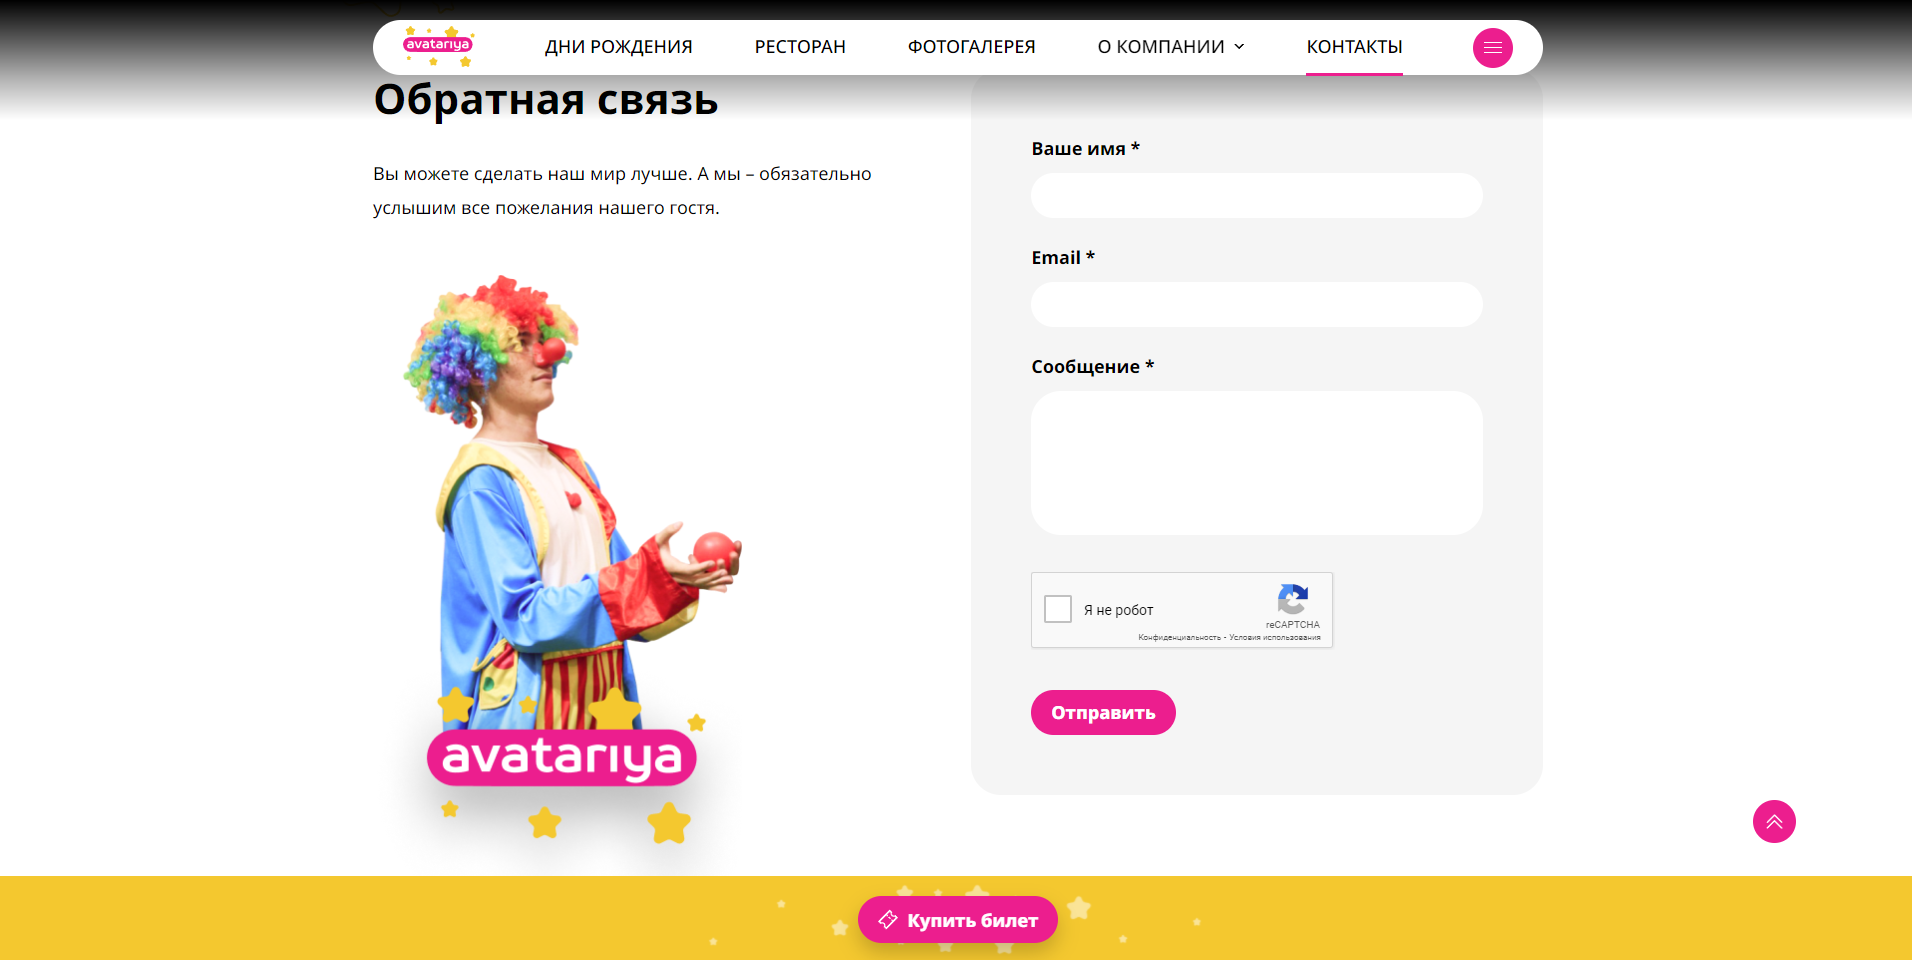 индивидуальный корпоративный сайт сети парков avatariya